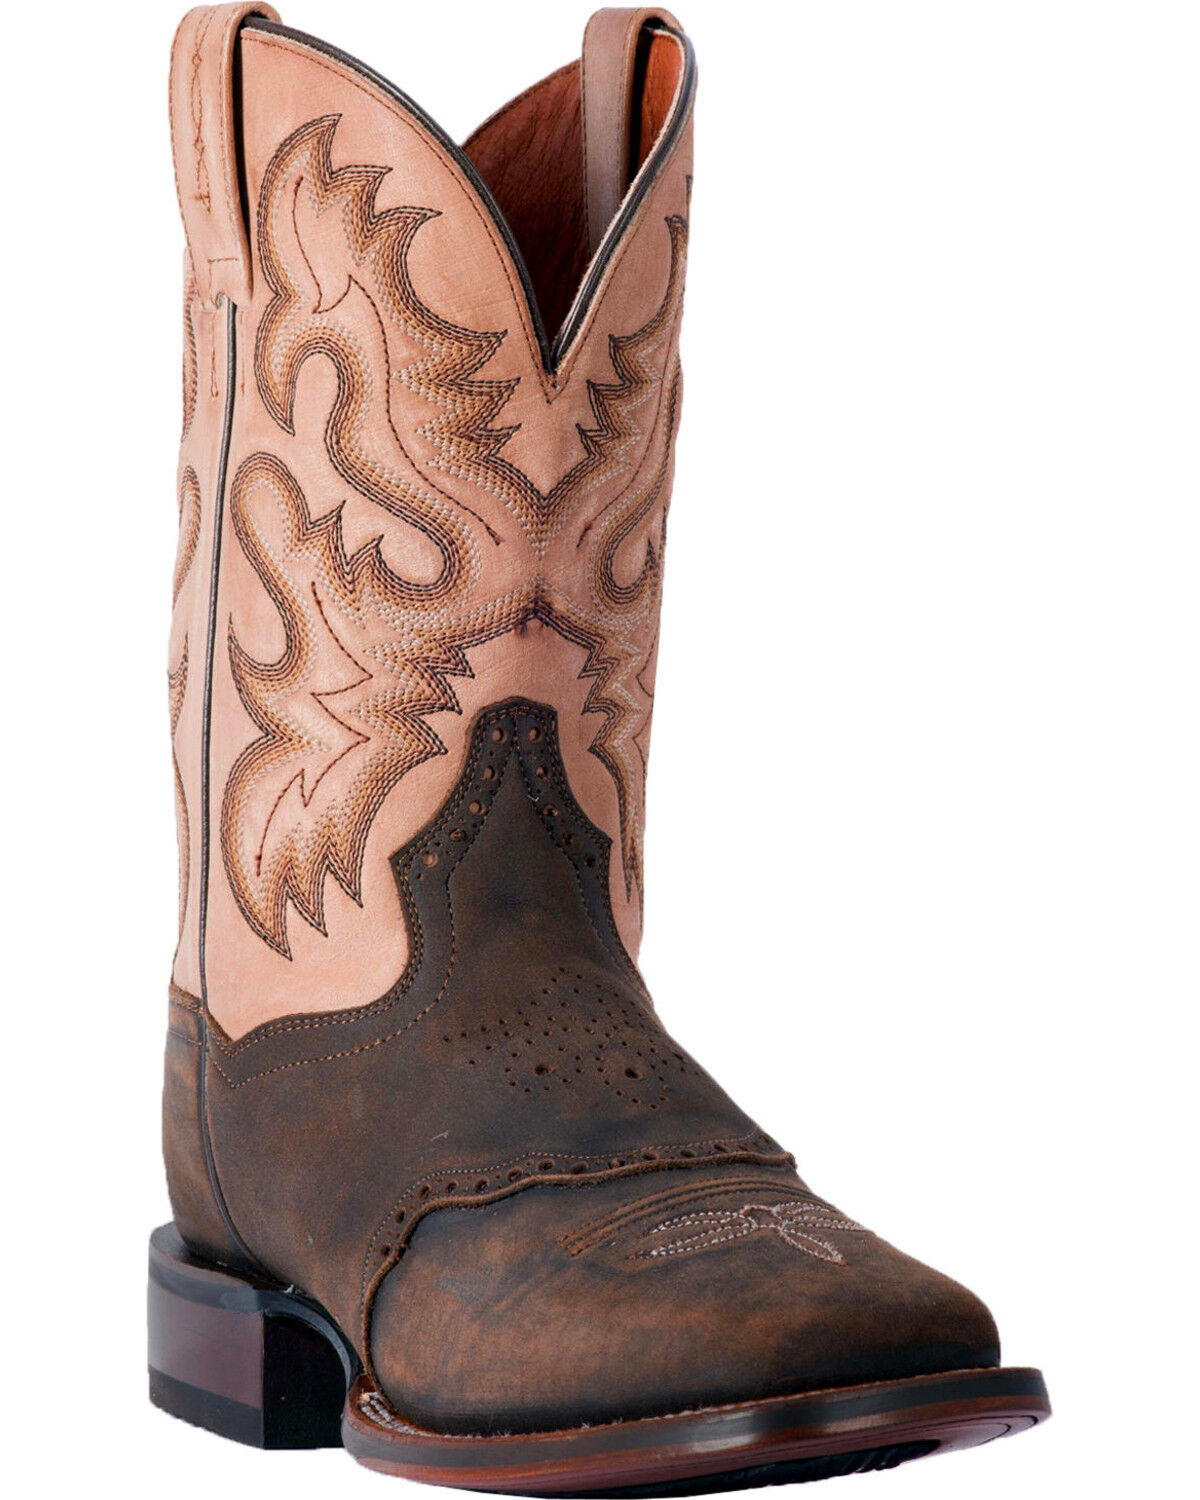 DP2565 Men/'s Brown Rustic Leather Cowboy Boots Dan Post Kellen